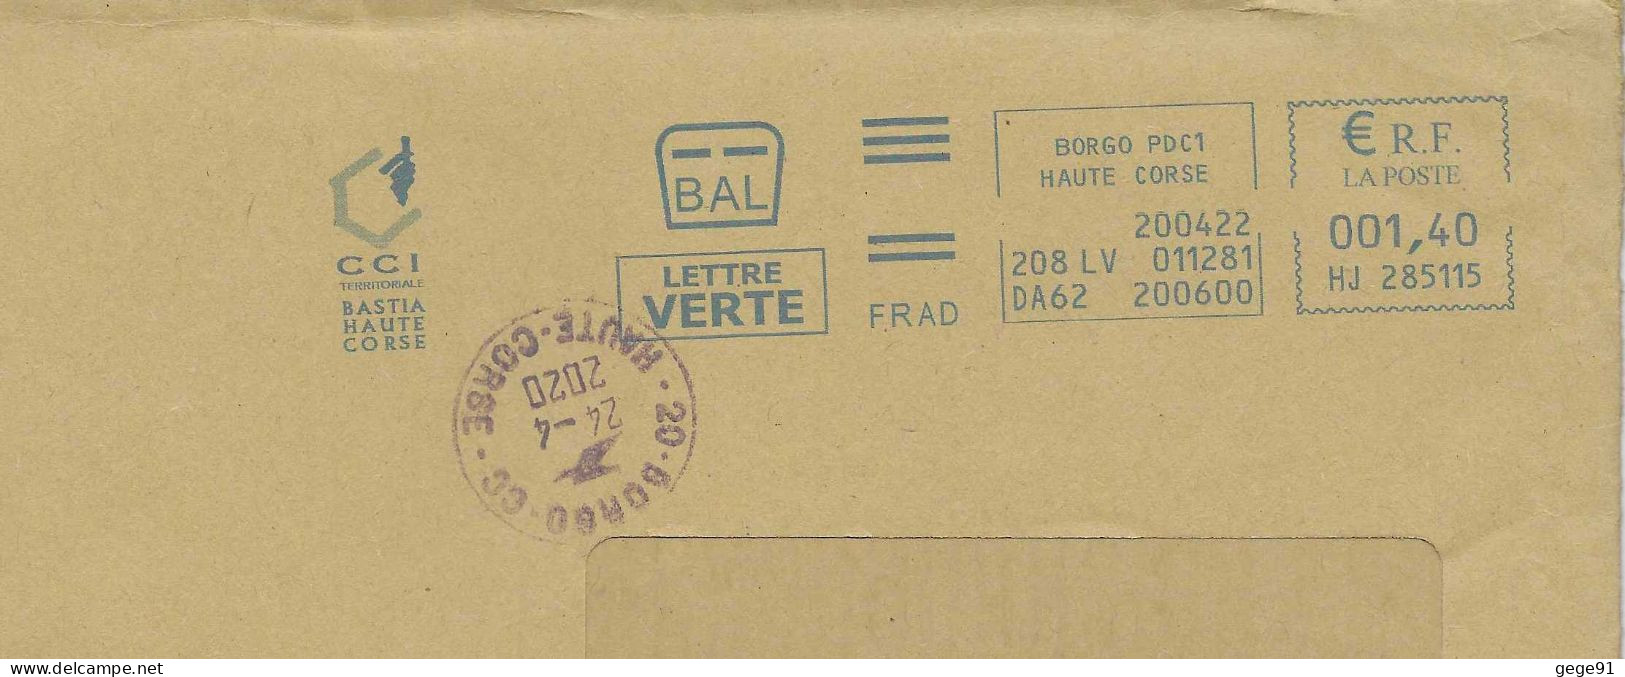 Ema Neopost HJ - Carte De La Corse - Cachet Manuel De Borgo Pour Correction De Date - Enveloppe Réduite 220x110 - Geography